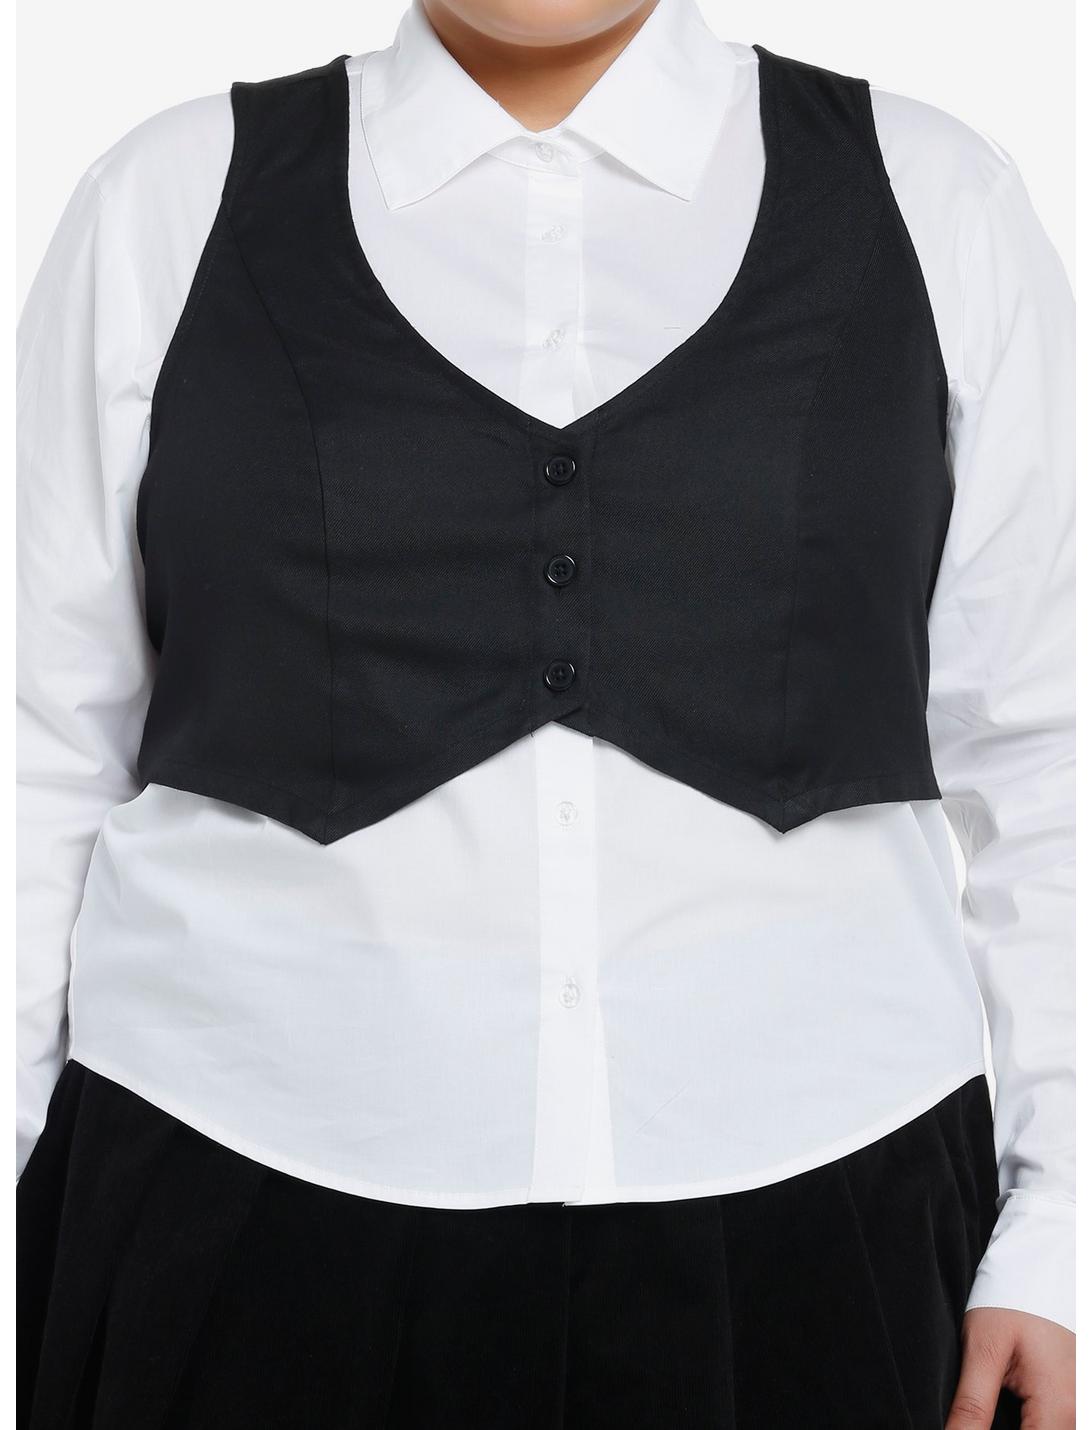 Social Collision Black Vest Girls Woven Button-Up Twofer Plus Size, BLACK, hi-res